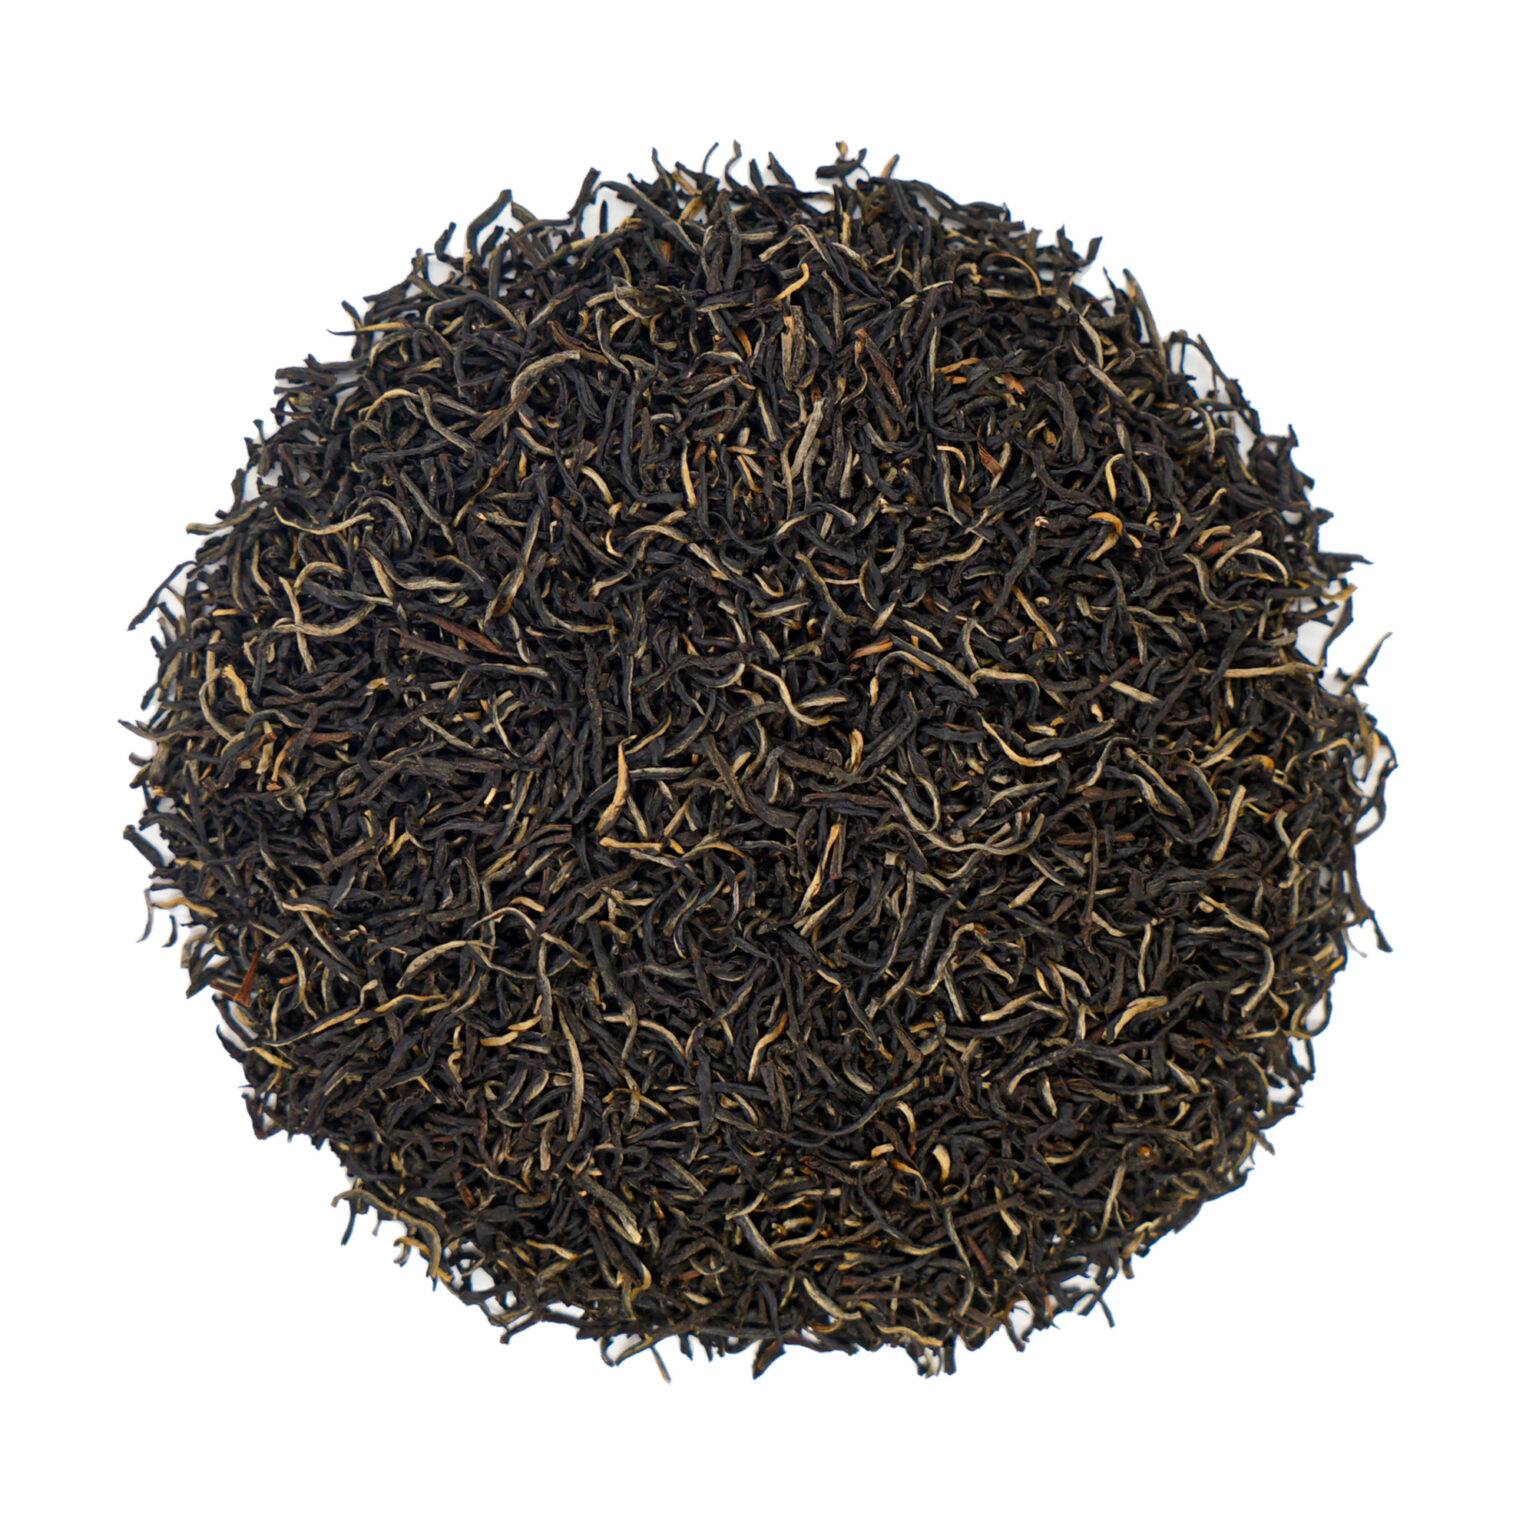 Herbata Ceylon New Vithanakande: Wyjątkowy smak korzenno-miodowy